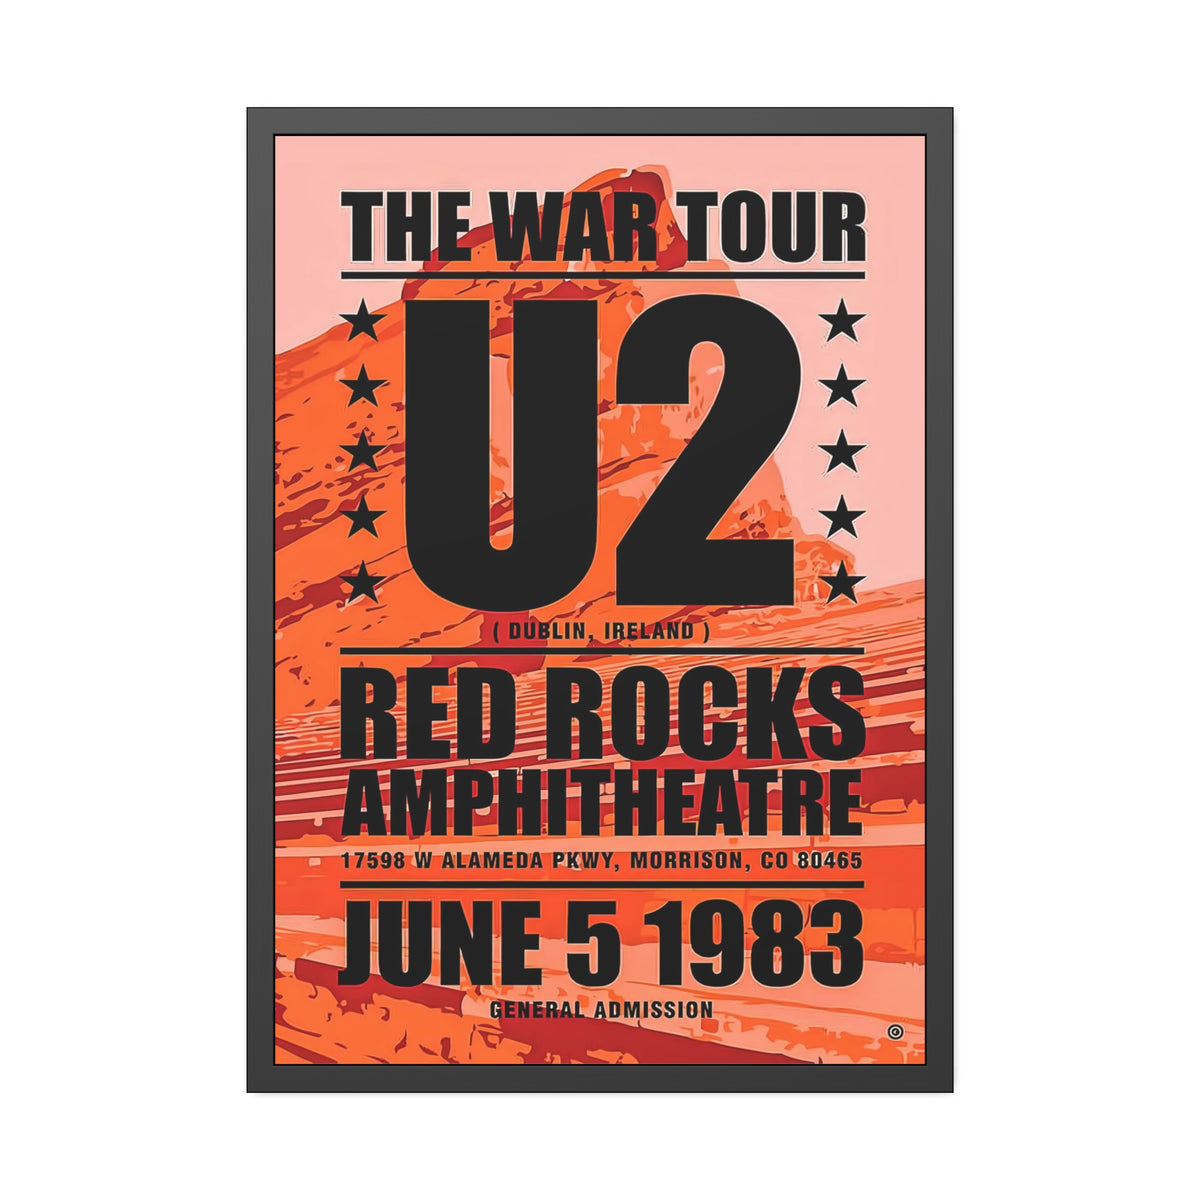 U2 Concert Poster Red Rocks